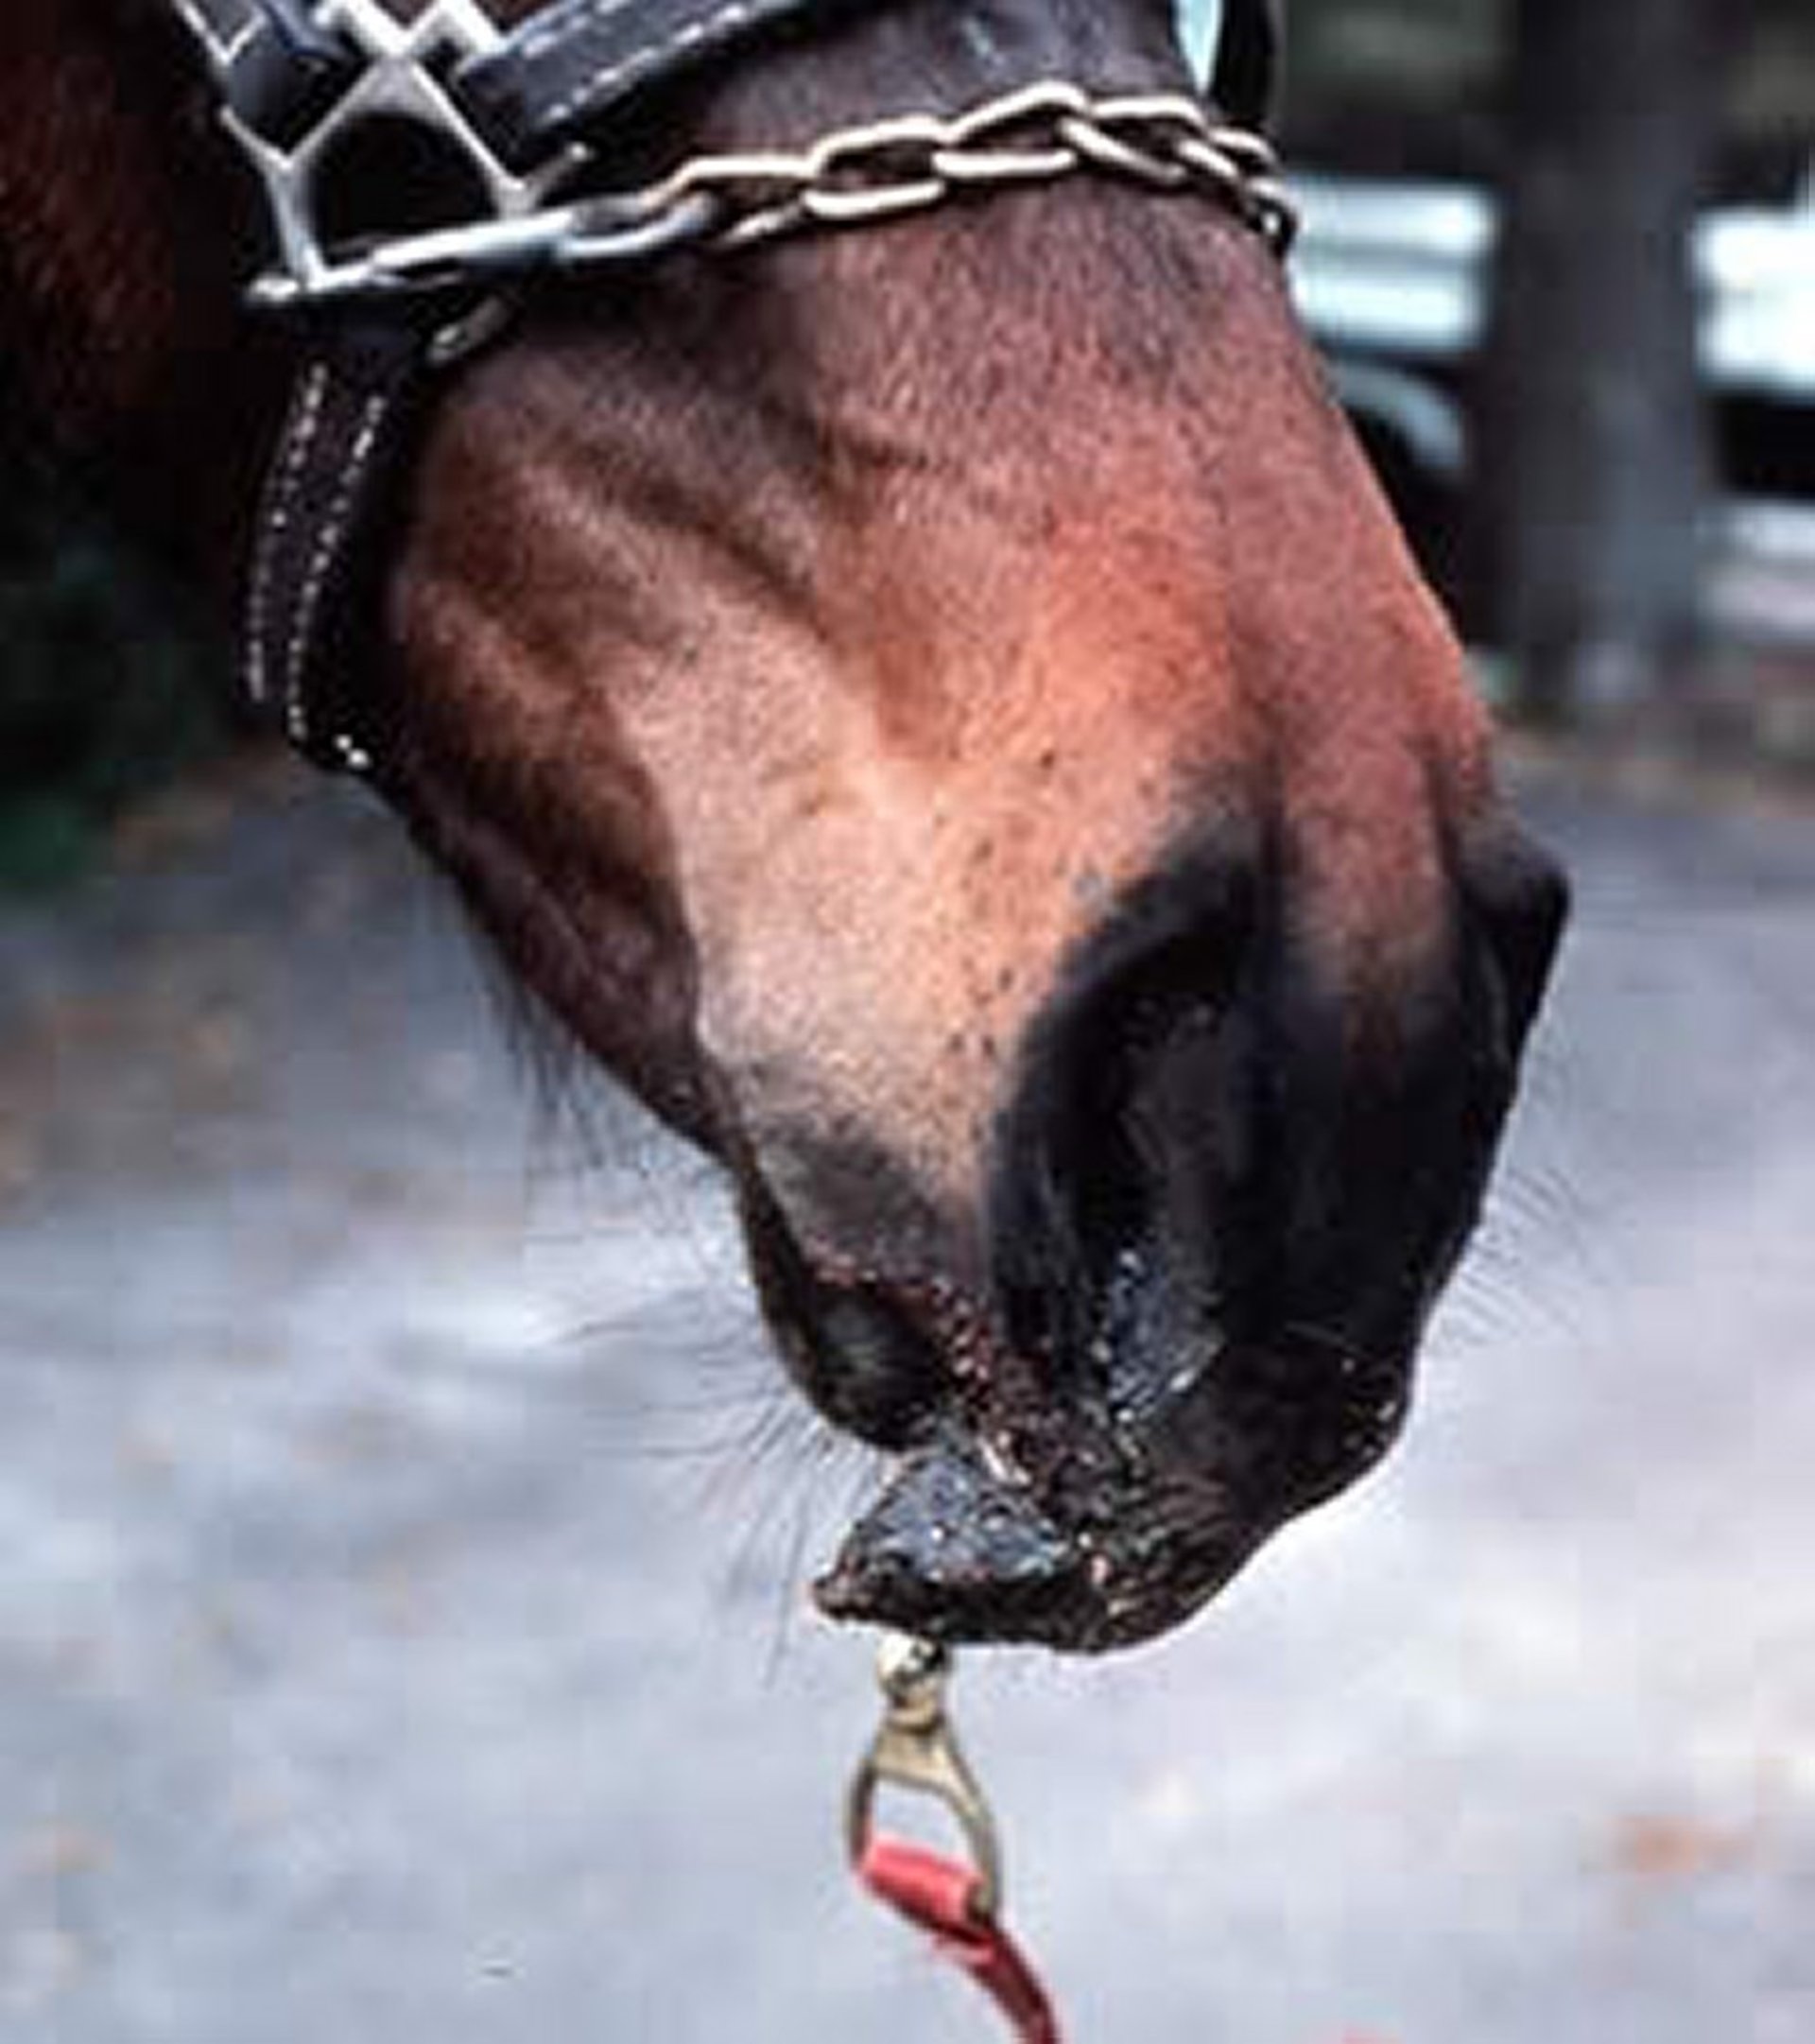 Muzzle trauma, horse